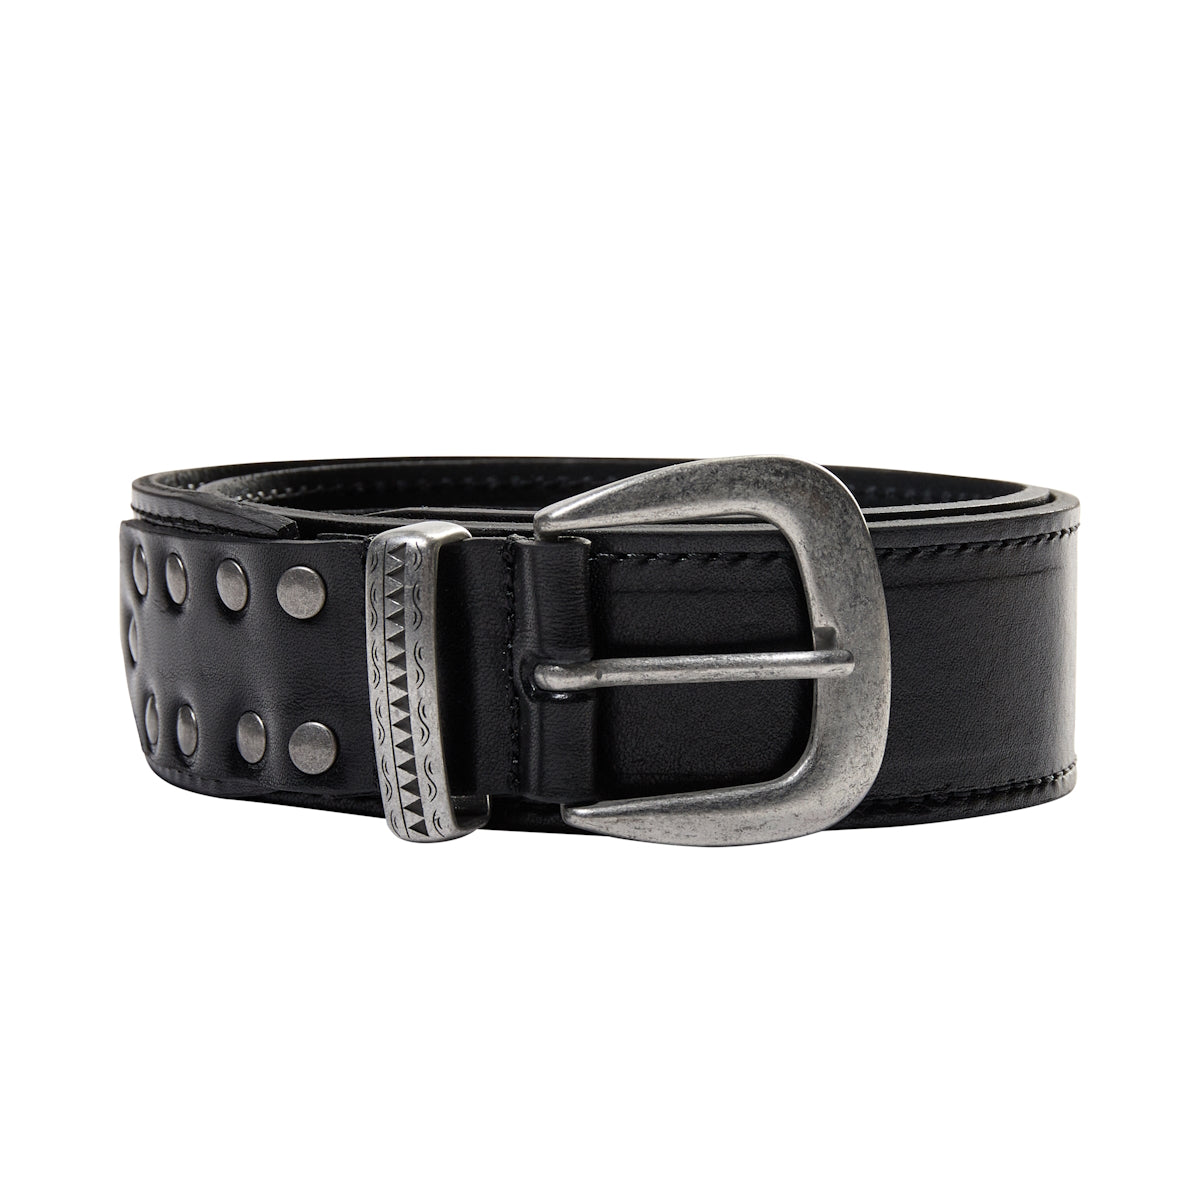 Studded Leather Belt Black 105